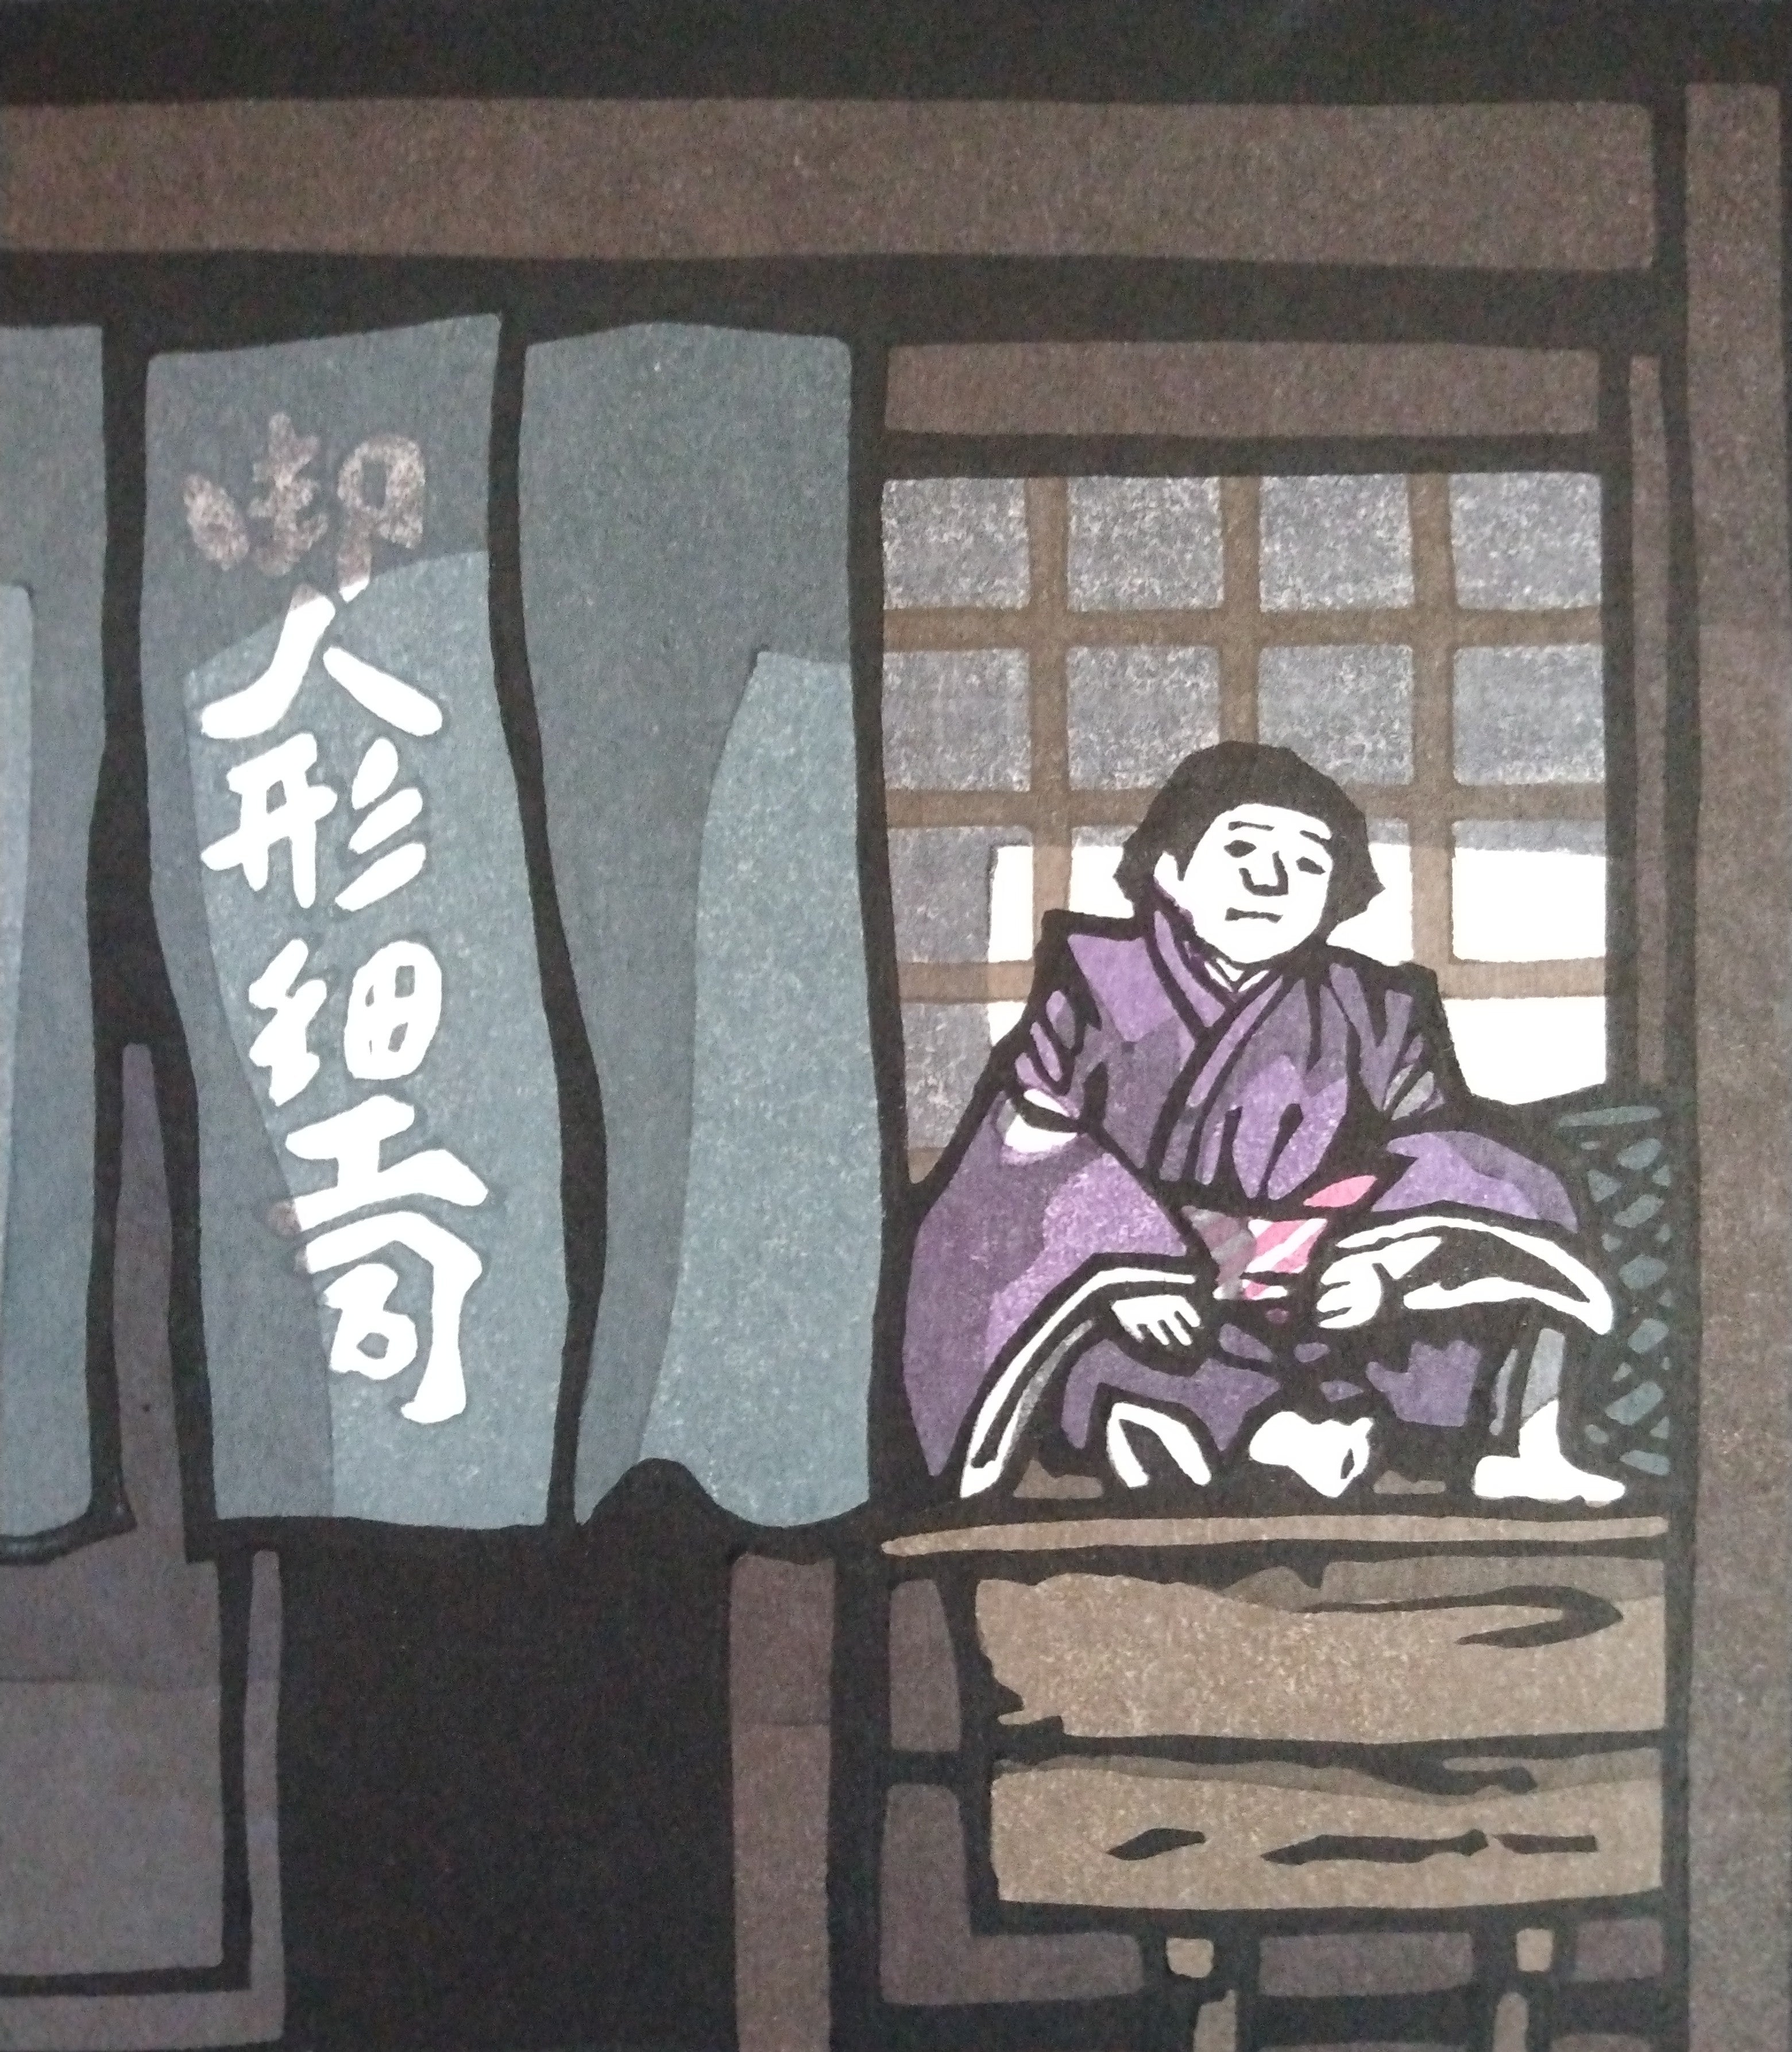 Woodblock Print by Katsuyuki Nishijima, "Nagatsuki" (Long Month, September)